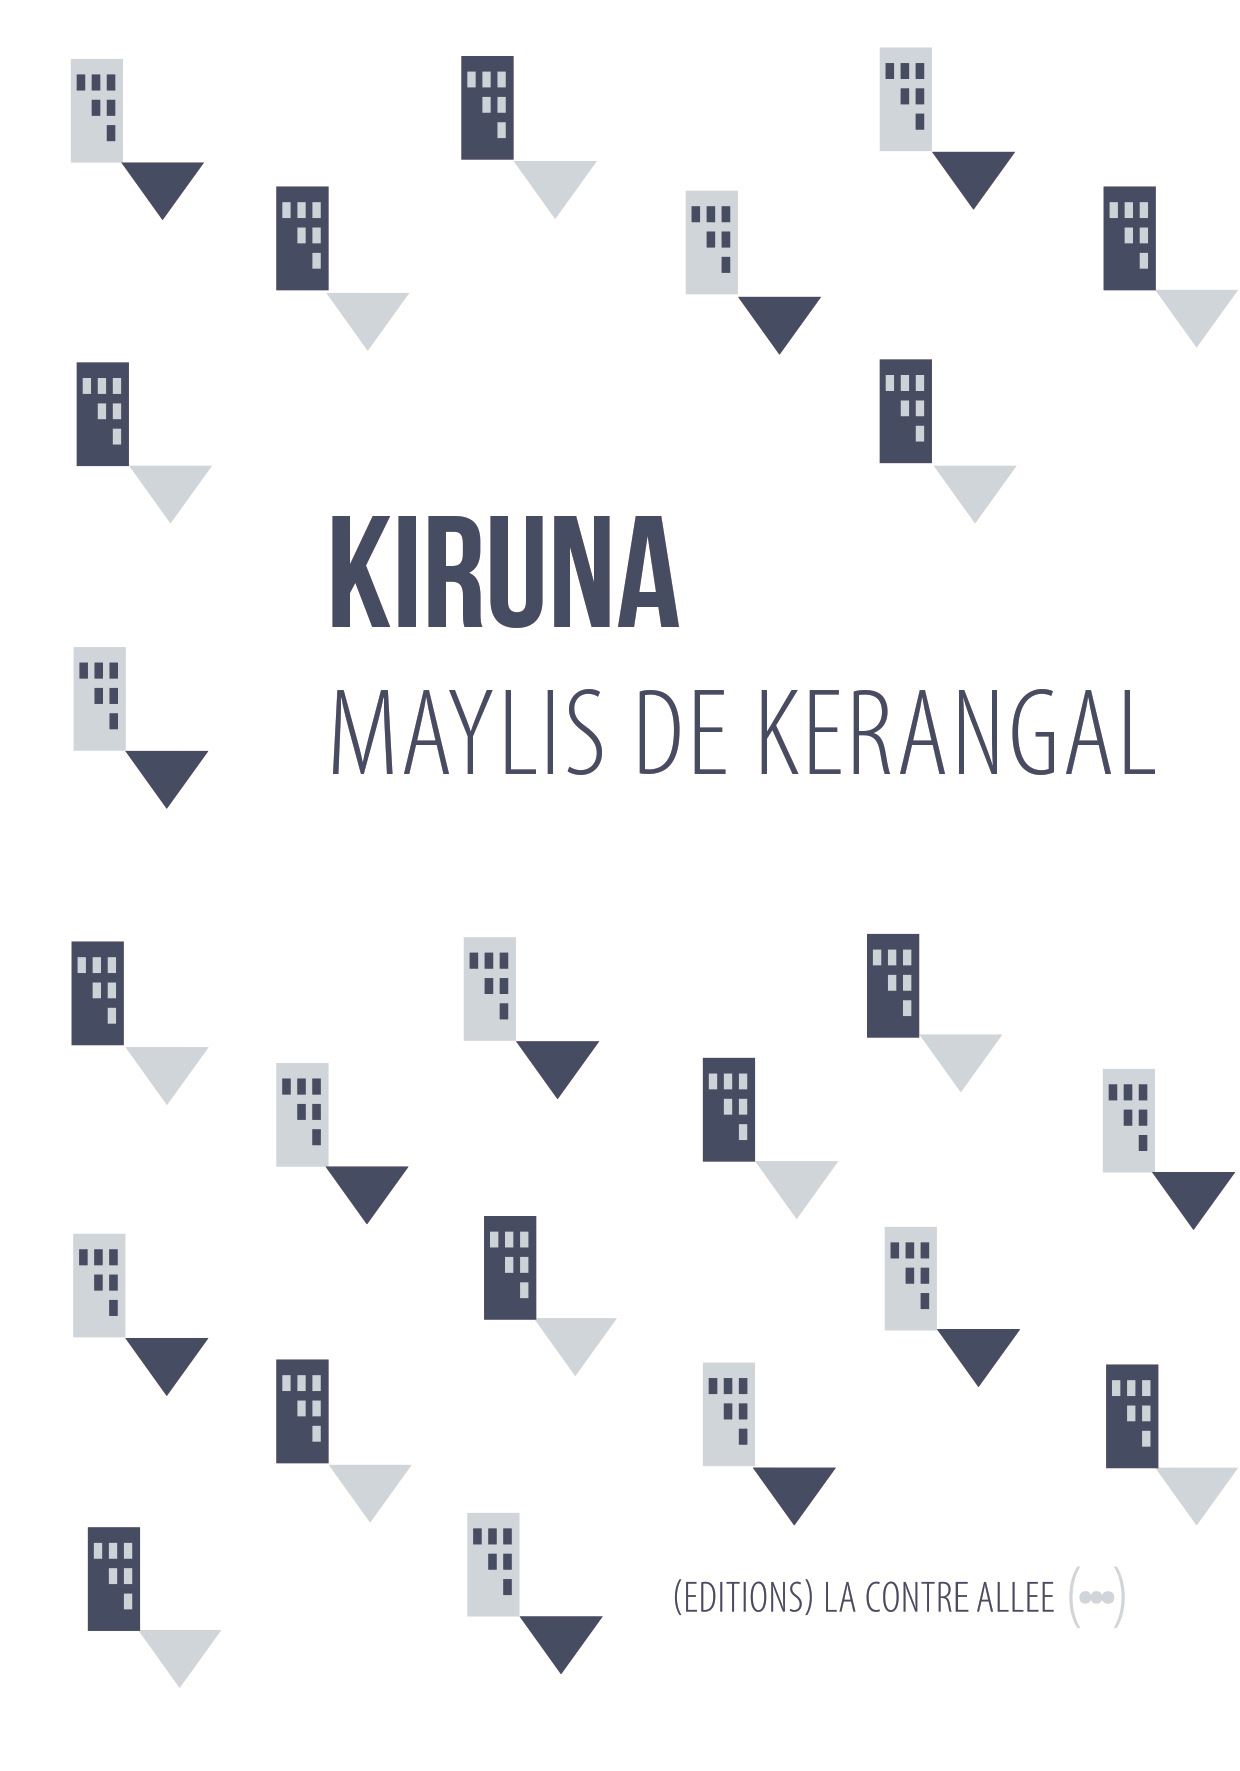 Kiruna, Maylis de Kérangal